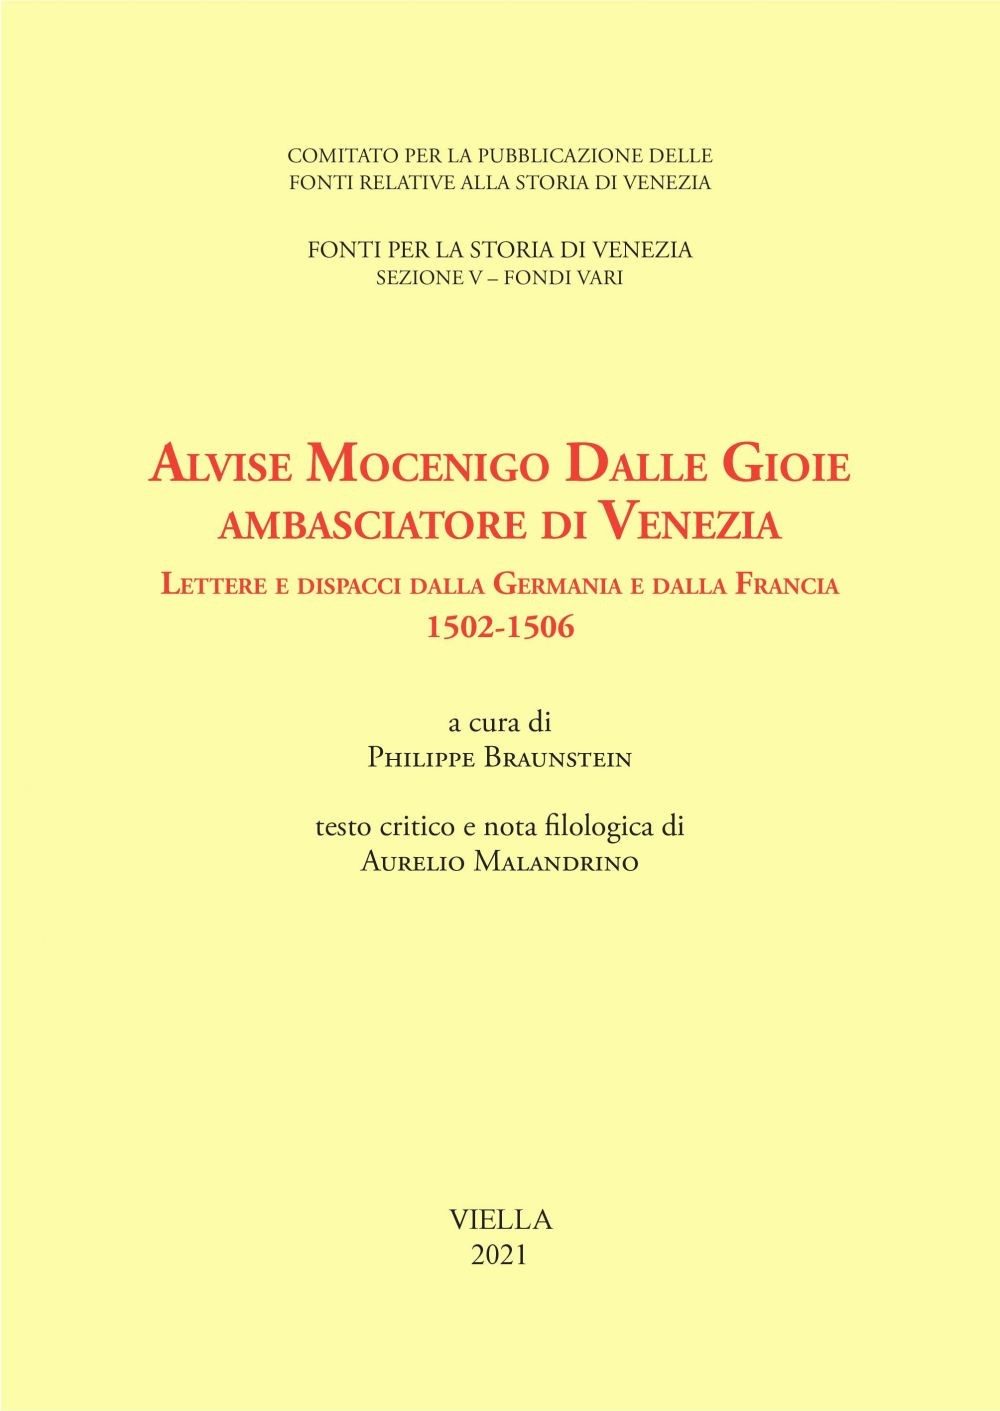 Alvise Mocenigo Dalle Gioie ambasciatore di Venezia - Librerie.coop